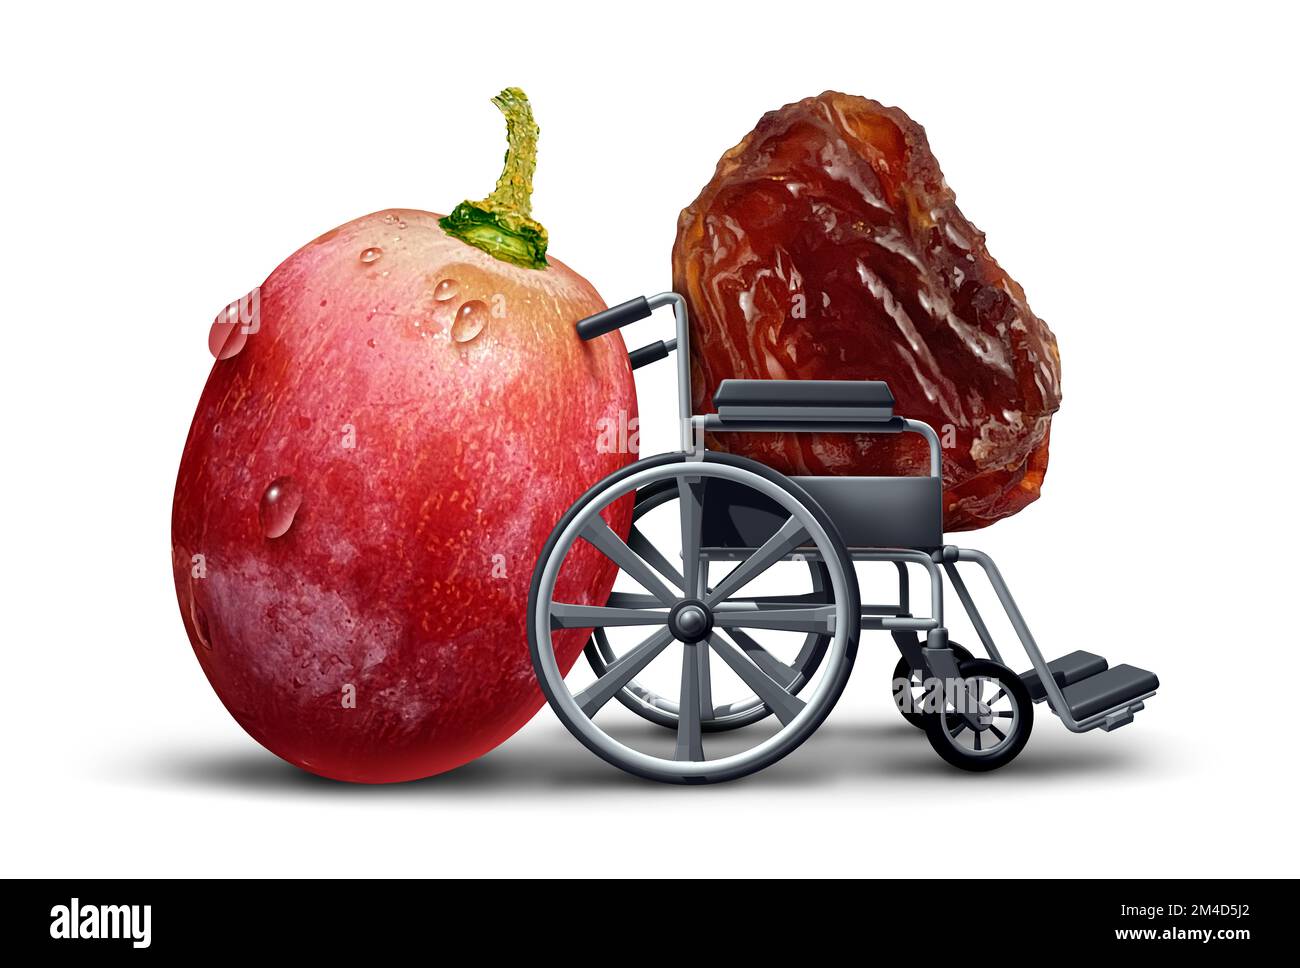 Le concept de soins aux personnes âgées comme un jeune soignant de raisin poussant une chaise de roue ou un fauteuil roulant portant une vieille raisins comme une image de fruit drôle représentant le travail au sol Banque D'Images